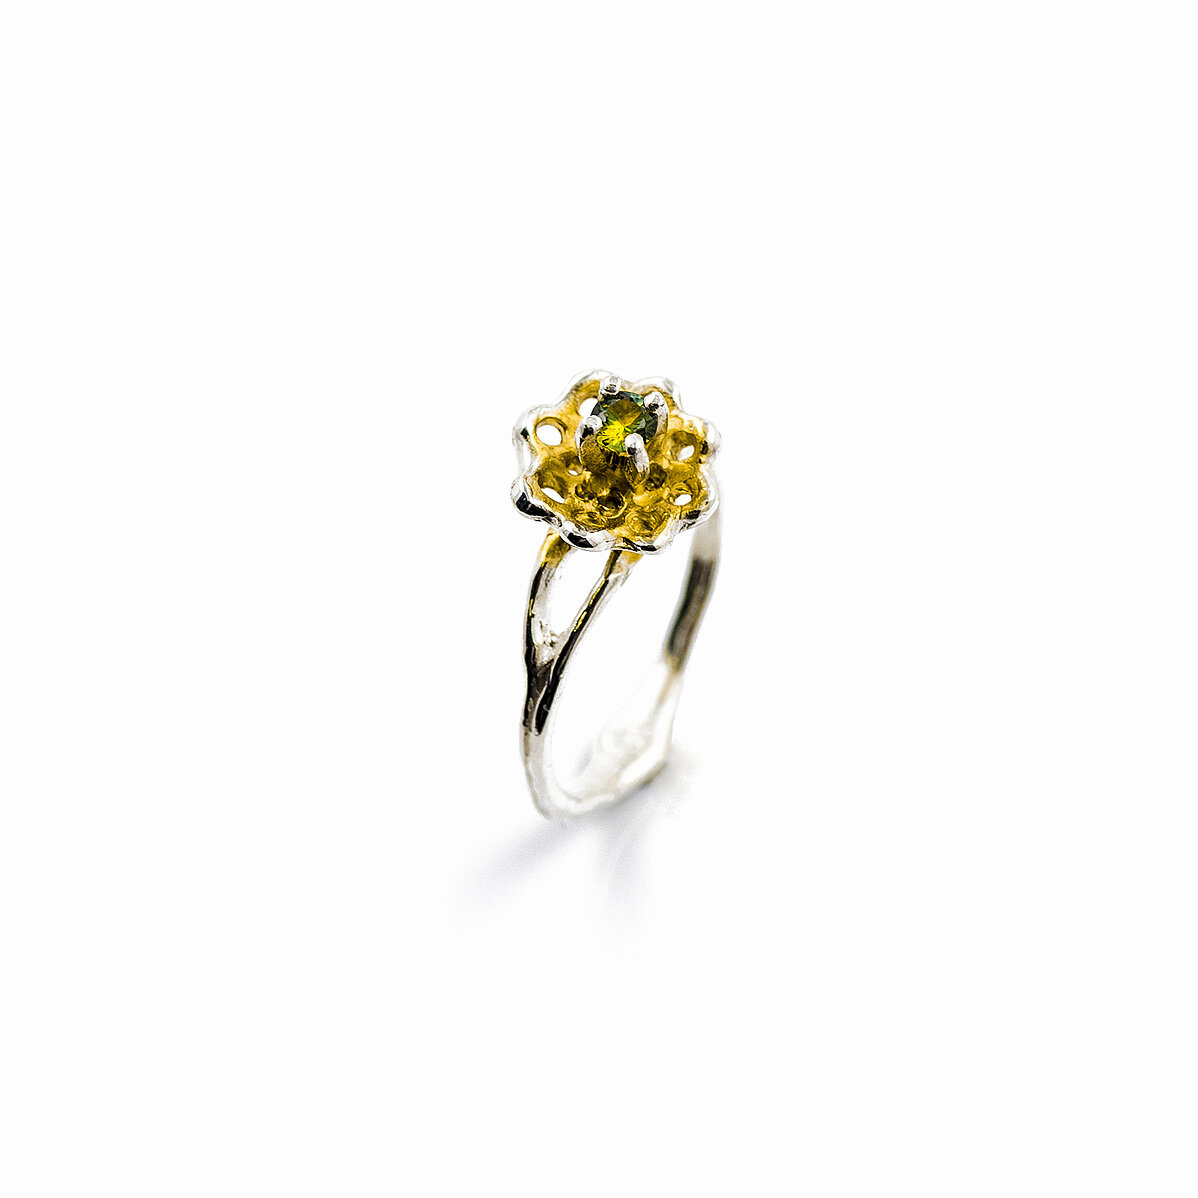 A yellow-green Australian sapphire extends from a golden surfaced silver fan. Luke Maninov